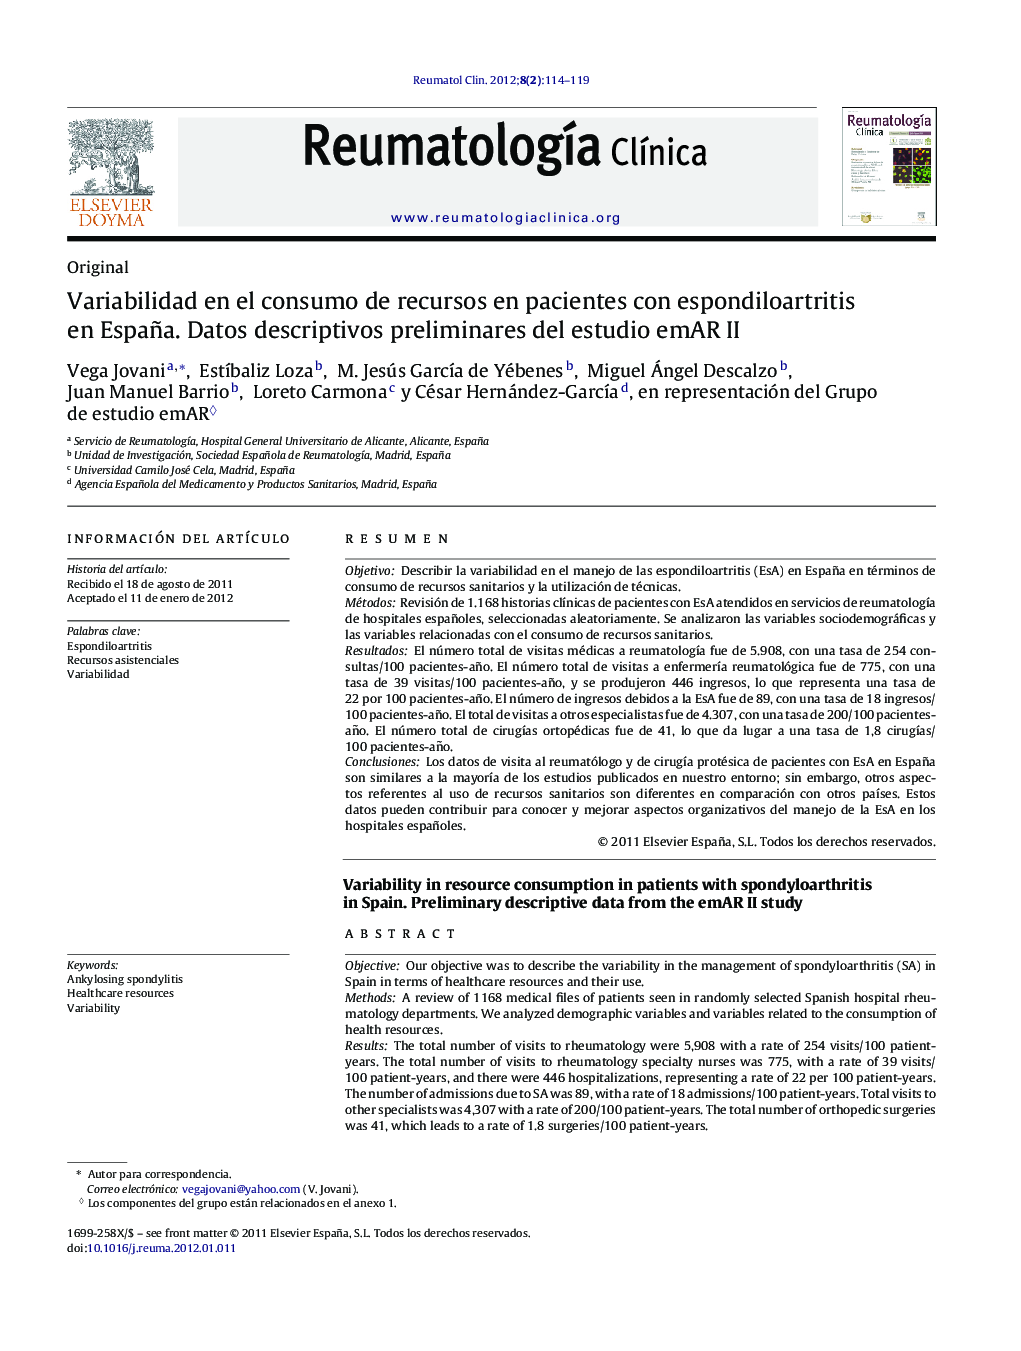 Variabilidad en el consumo de recursos en pacientes con espondiloartritis en España. Datos descriptivos preliminares del estudio emAR II